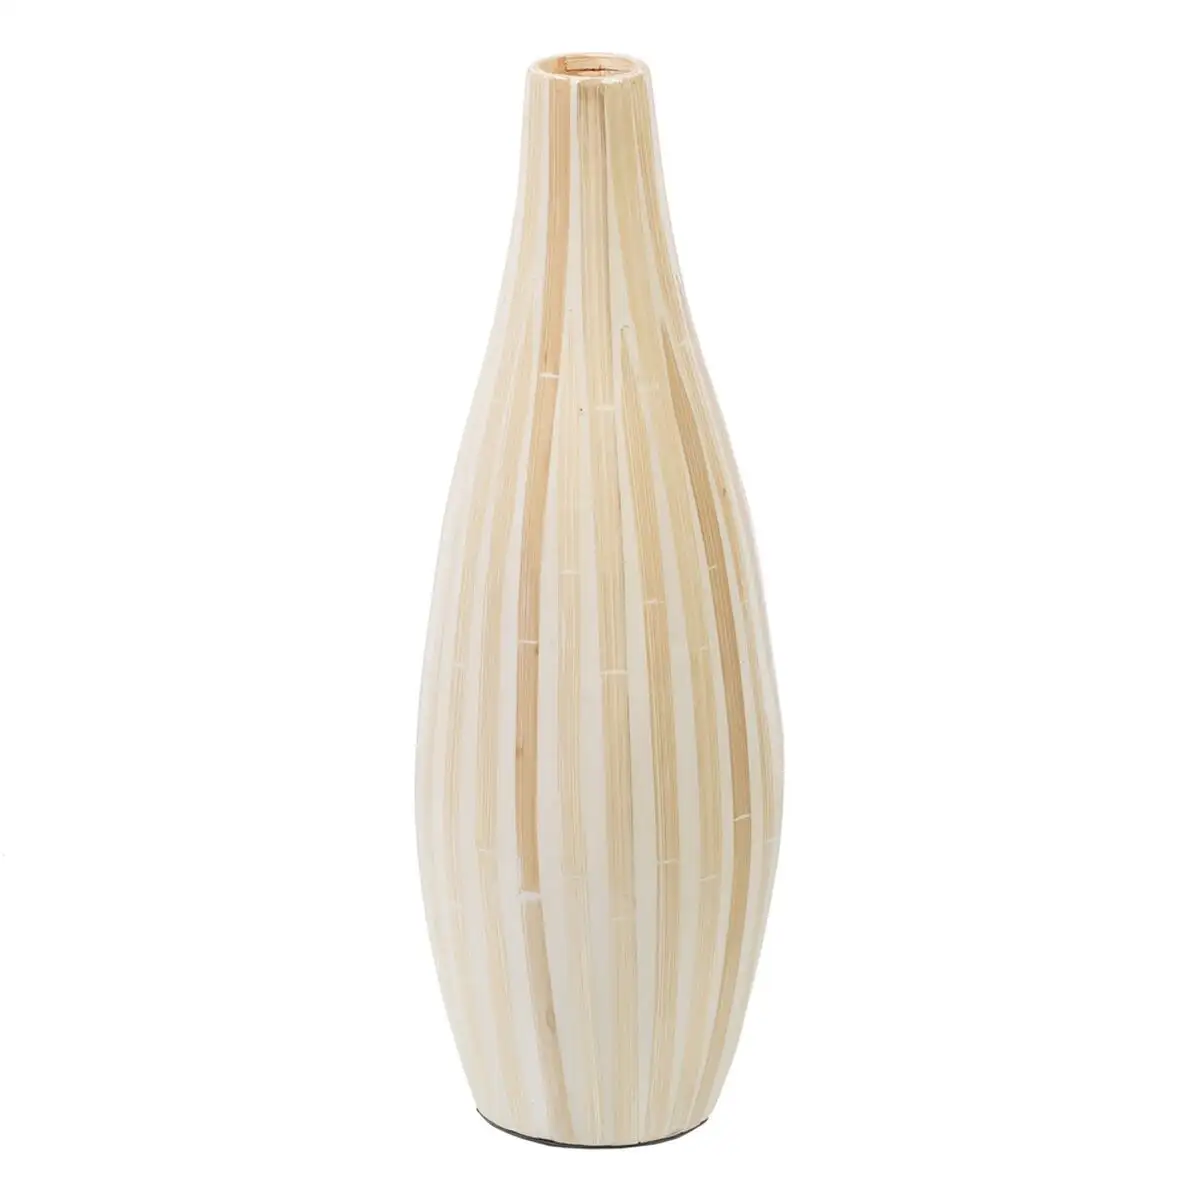 Vase 15 x 15 x 44 cm bambou beige_2407. DIAYTAR SENEGAL - Où la Qualité et la Diversité Fusionnent. Explorez notre boutique en ligne pour découvrir une gamme variée de produits qui incarnent l'excellence et l'authenticité.